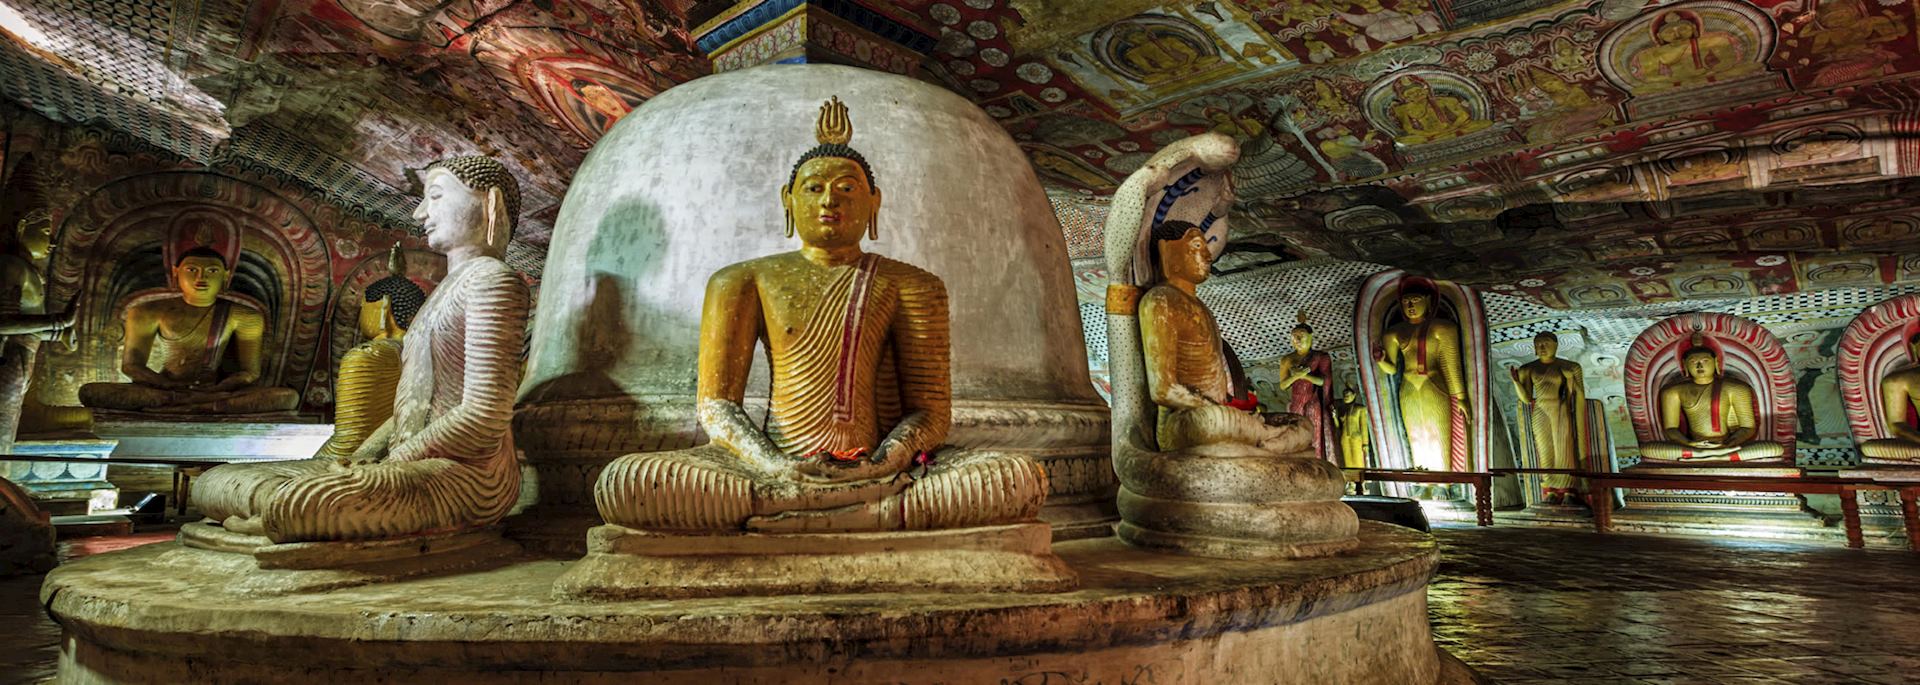 Dambulla Cave Temple in Sri Lanka's Cultural Triangle region